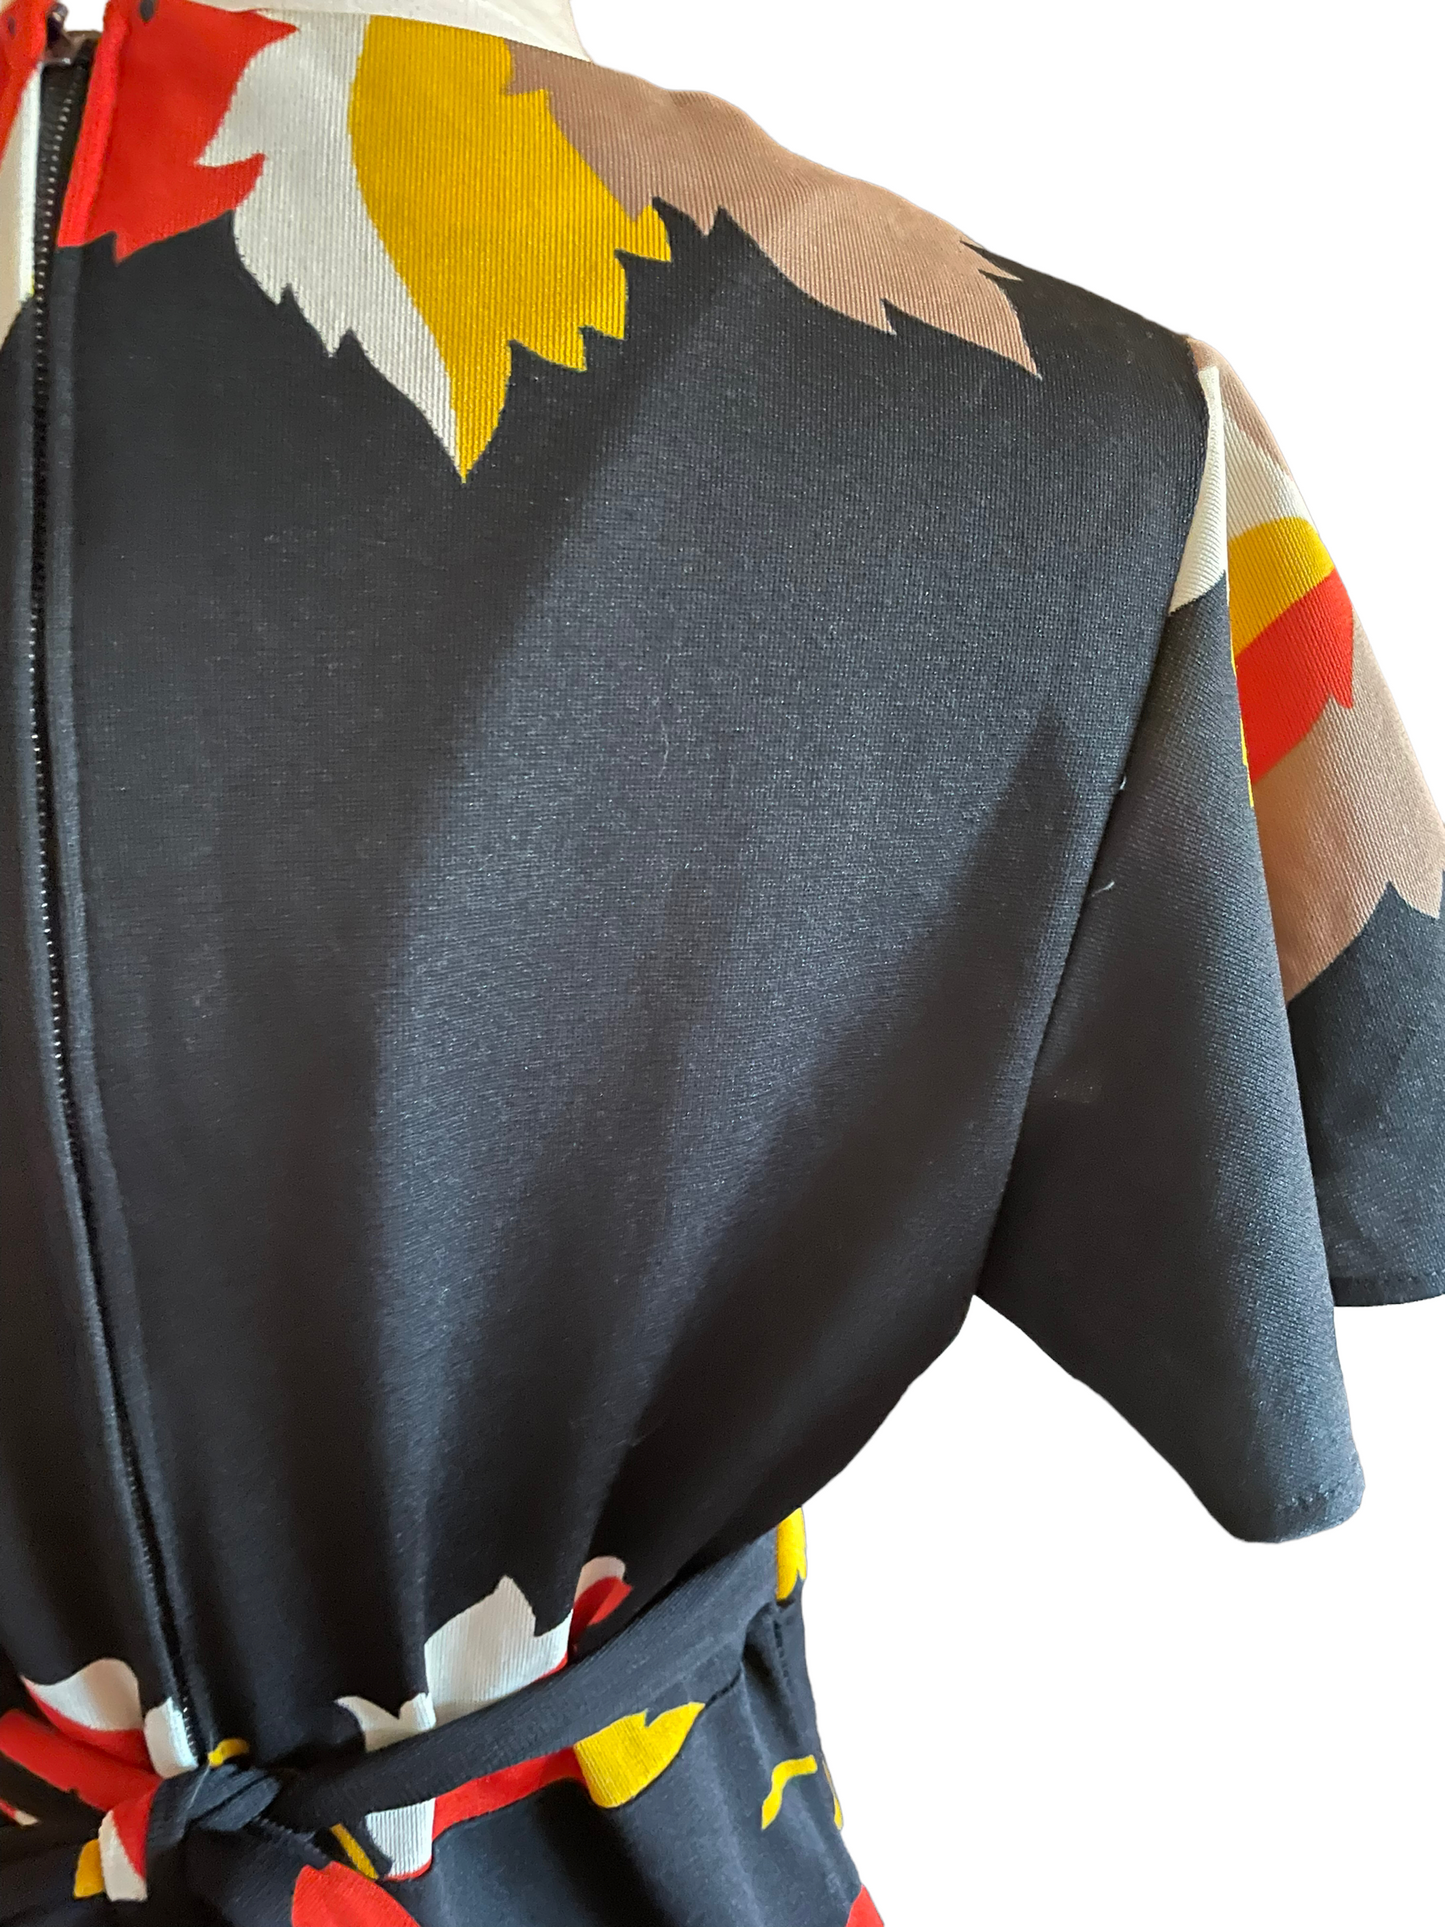 Vintage 1960s Fall Leaves Maxi Dress |  Barn Owl Vintage | Seattle Vintage Dresses Back right shoulder view.